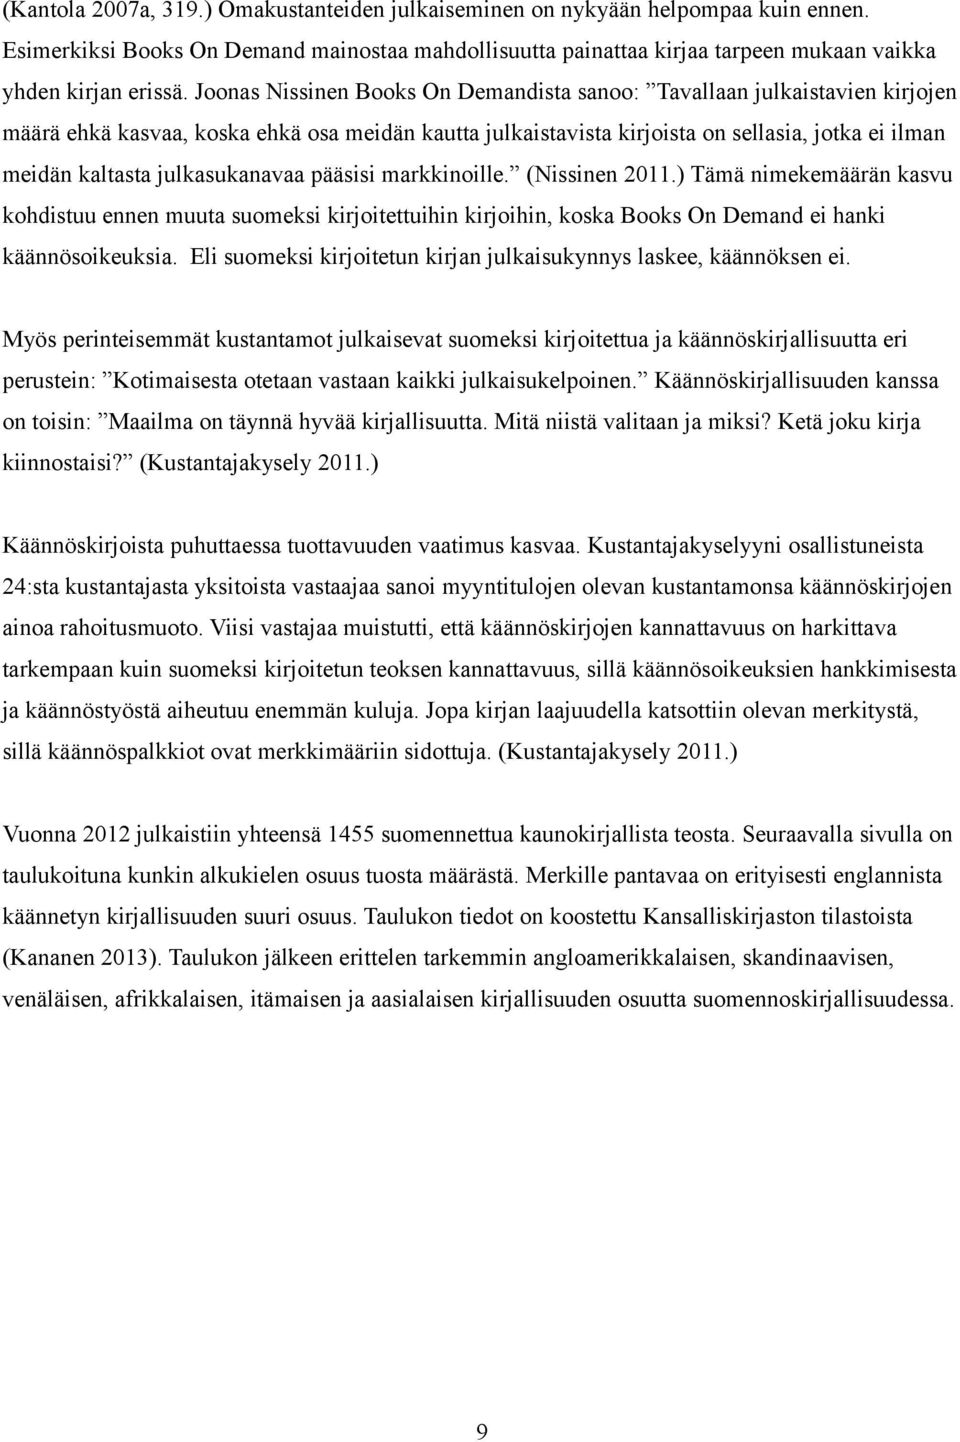 julkasukanavaa pääsisi markkinoille. (Nissinen 2011.) Tämä nimekemäärän kasvu kohdistuu ennen muuta suomeksi kirjoitettuihin kirjoihin, koska Books On Demand ei hanki käännösoikeuksia.